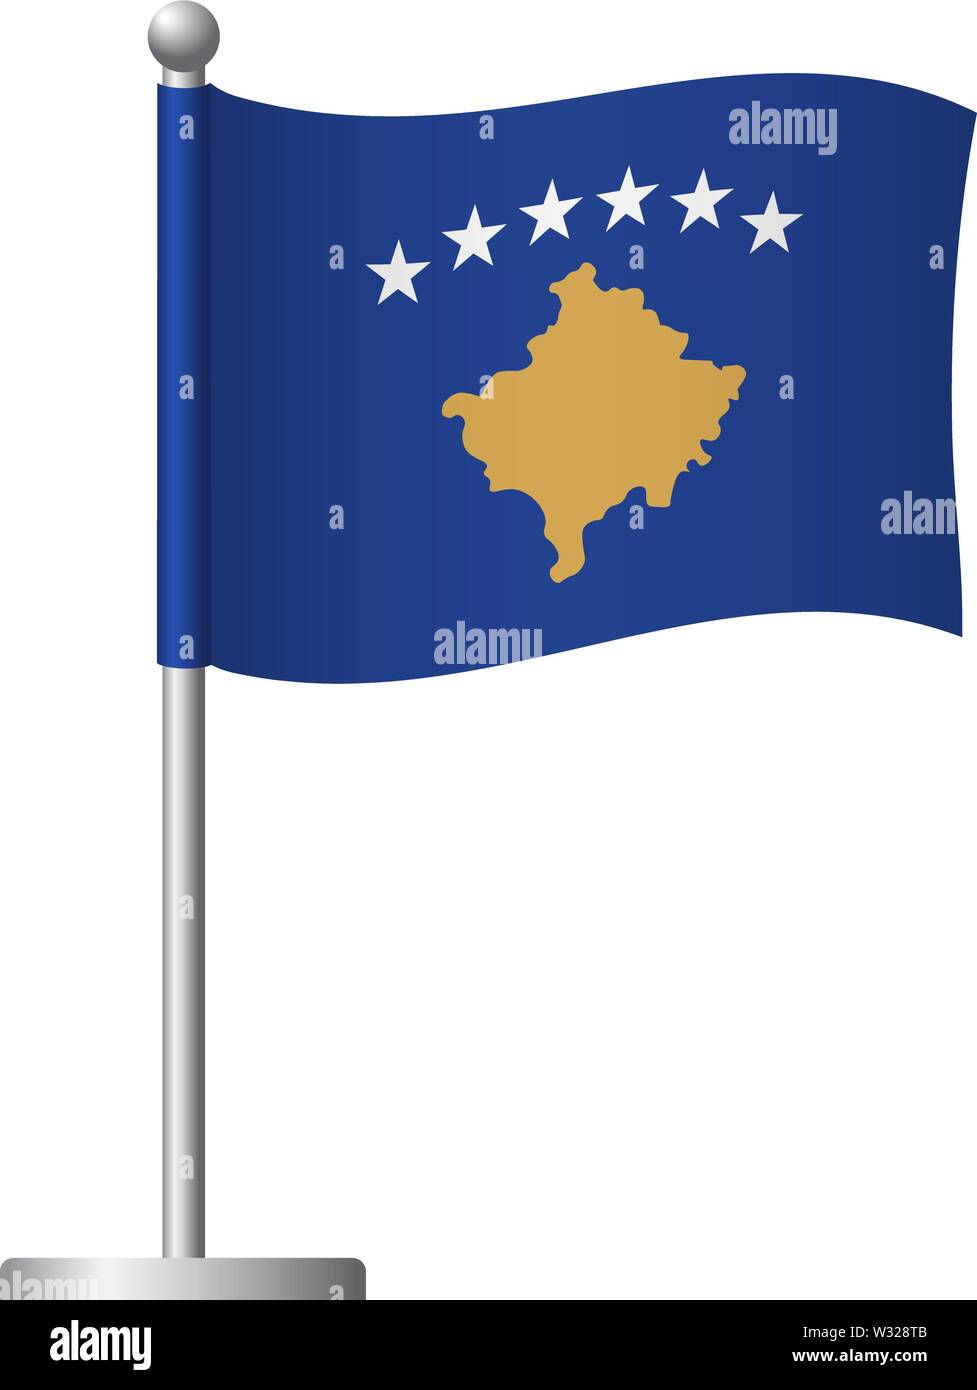 Kosovo flag icon. National flag of Kosovo on a pole illustration Stock  Photo - Alamy